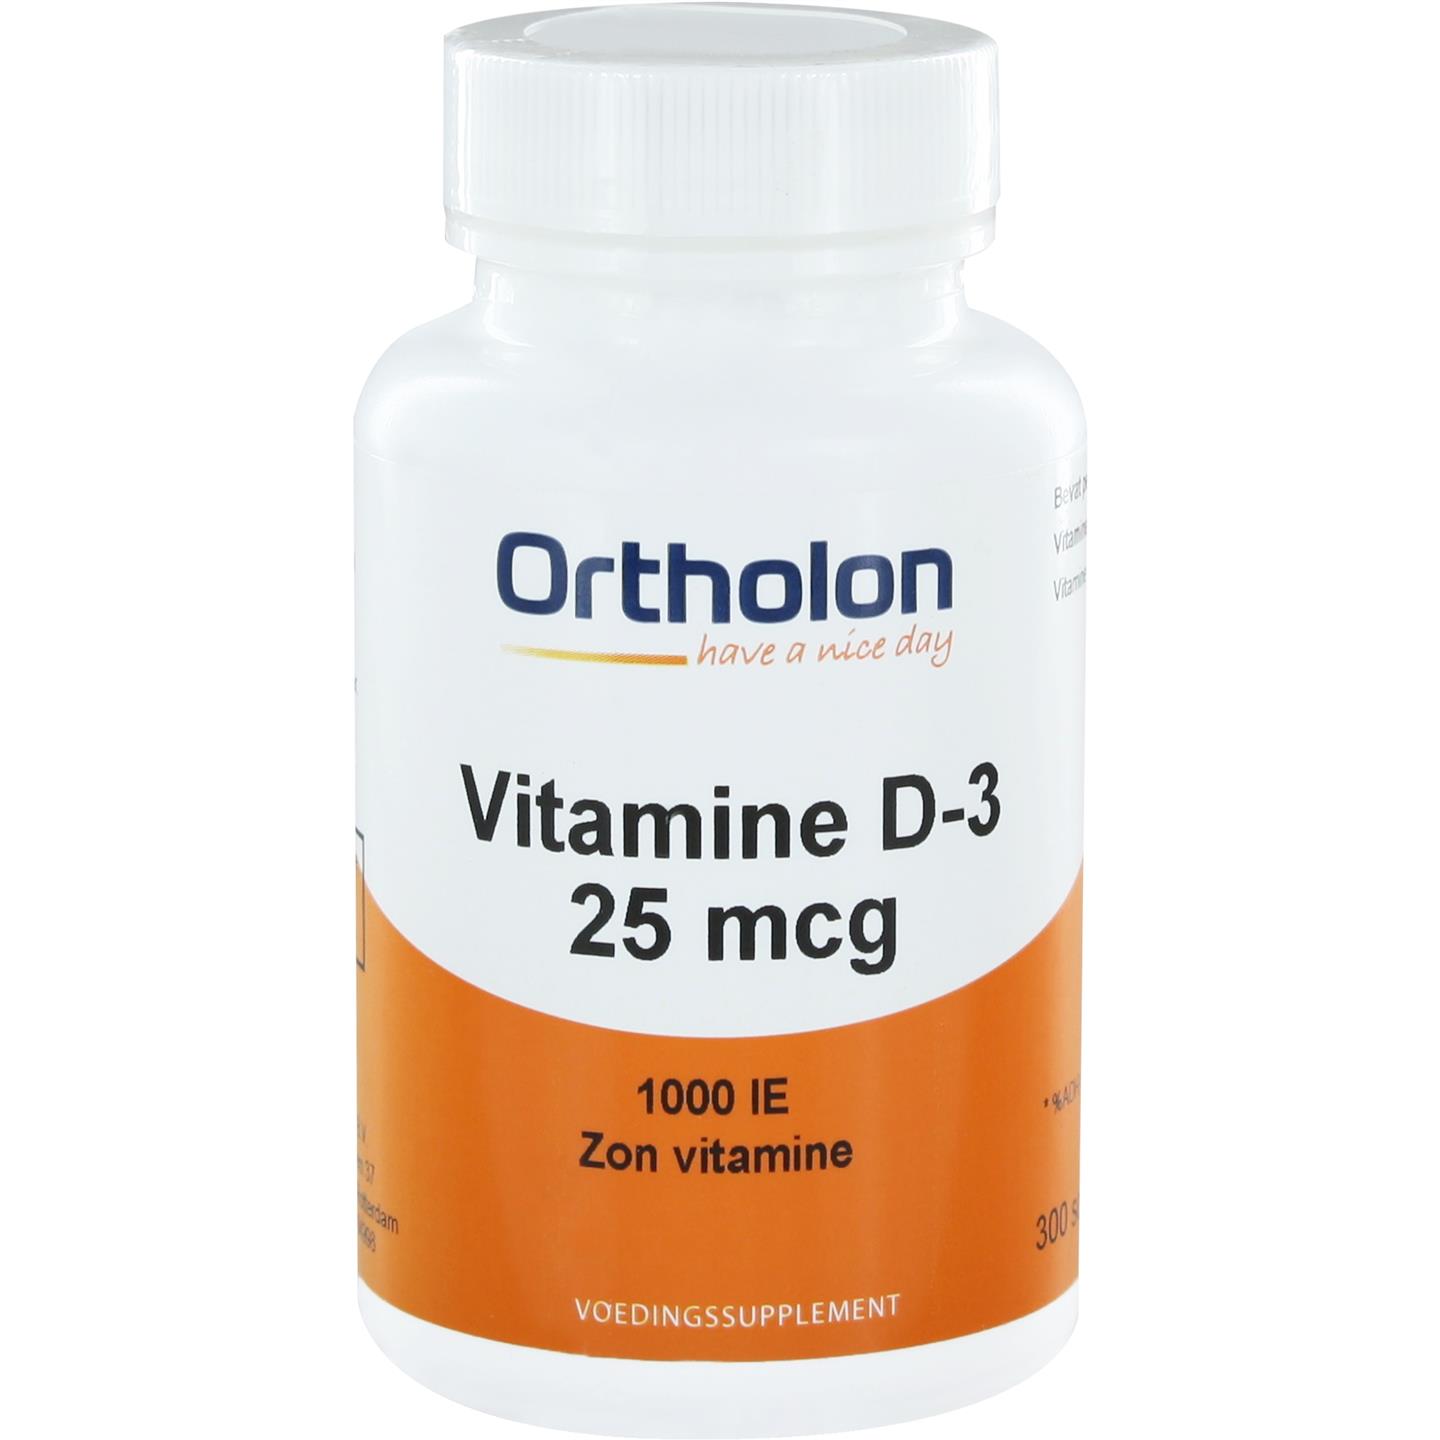 Vitamine D-3 25 mcg